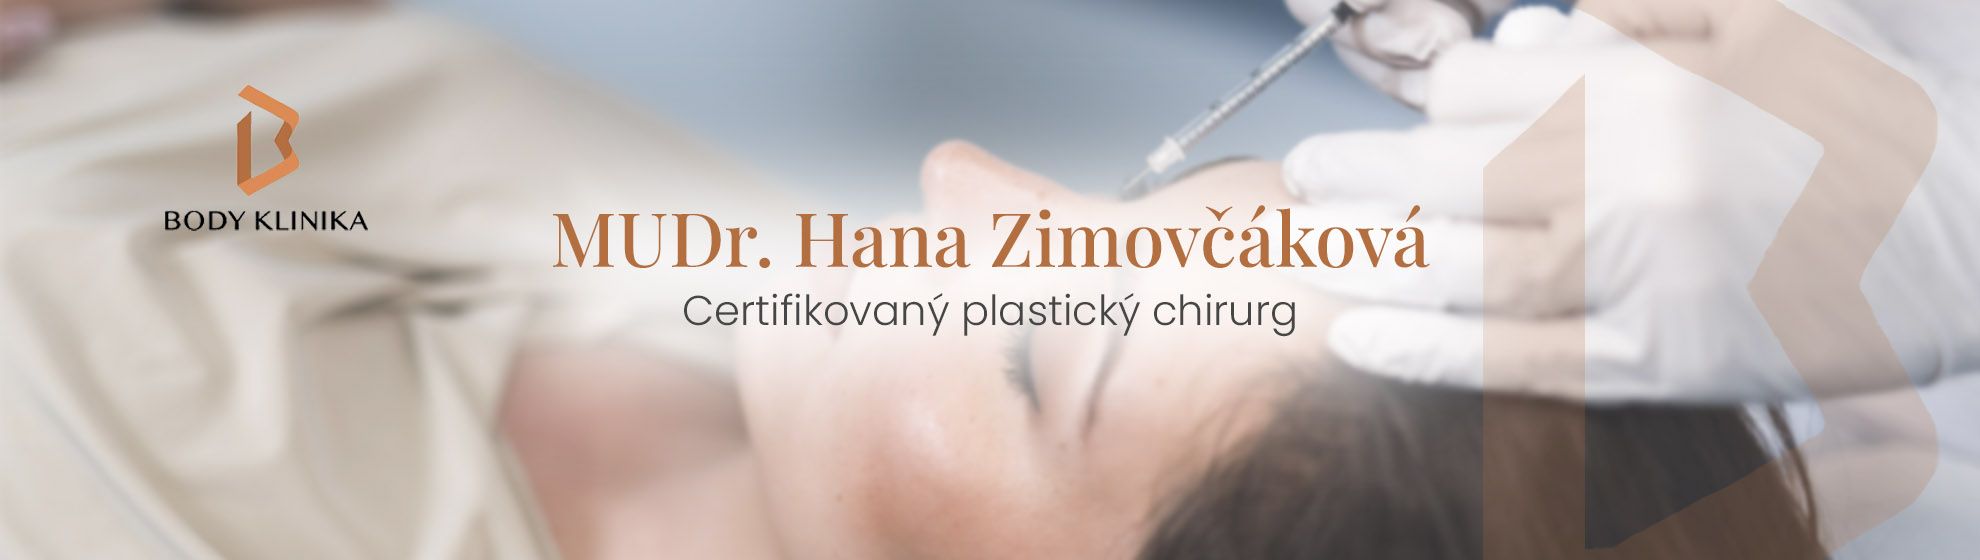 MUDr. Hana Zimovčáková - BODY klinika plastické chirurgie